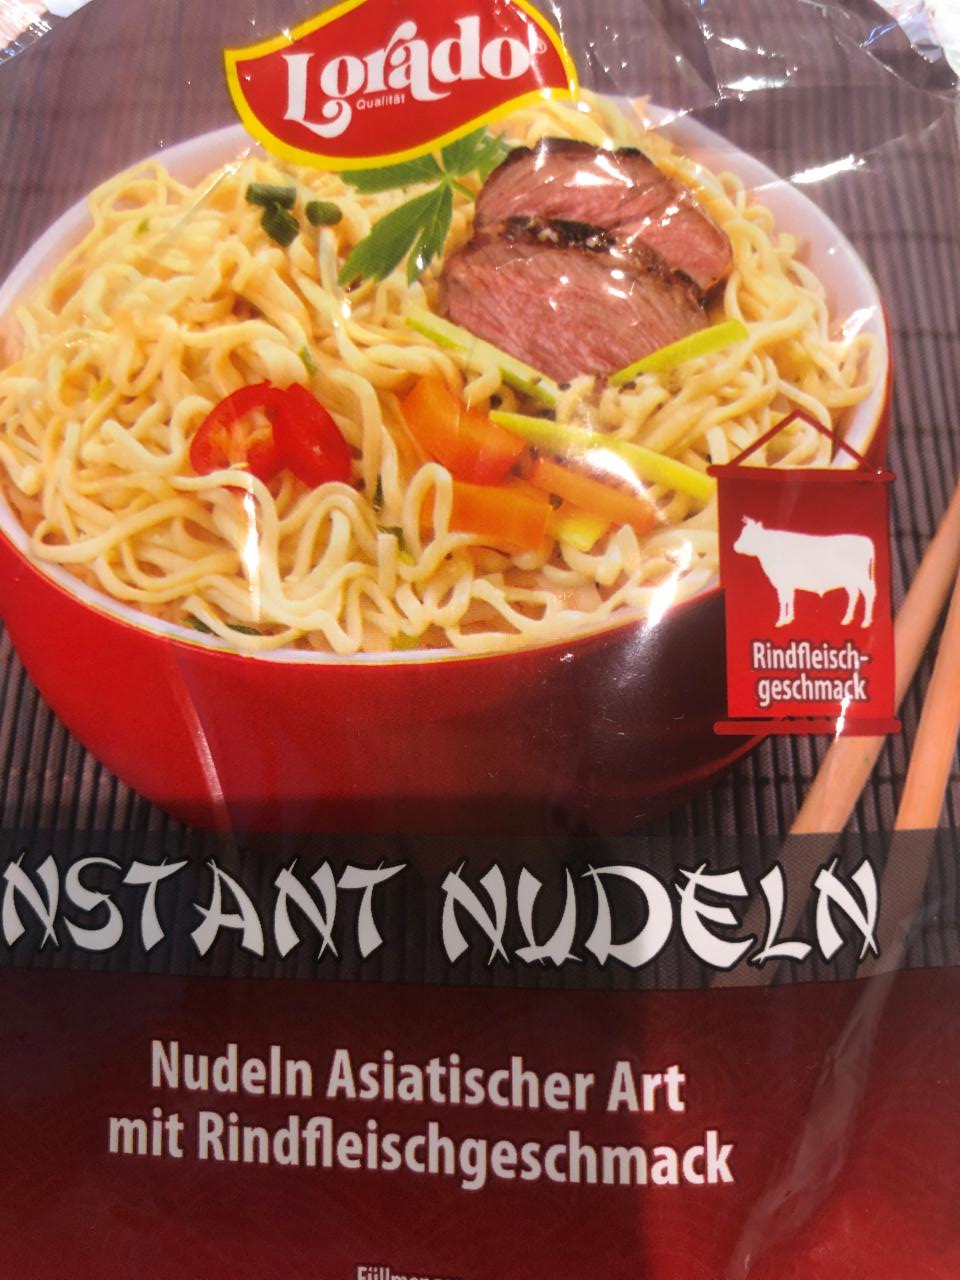 Fotografie - Instant Nudeln Asiatischer Art mit Rindfleischgeschmack Lorado